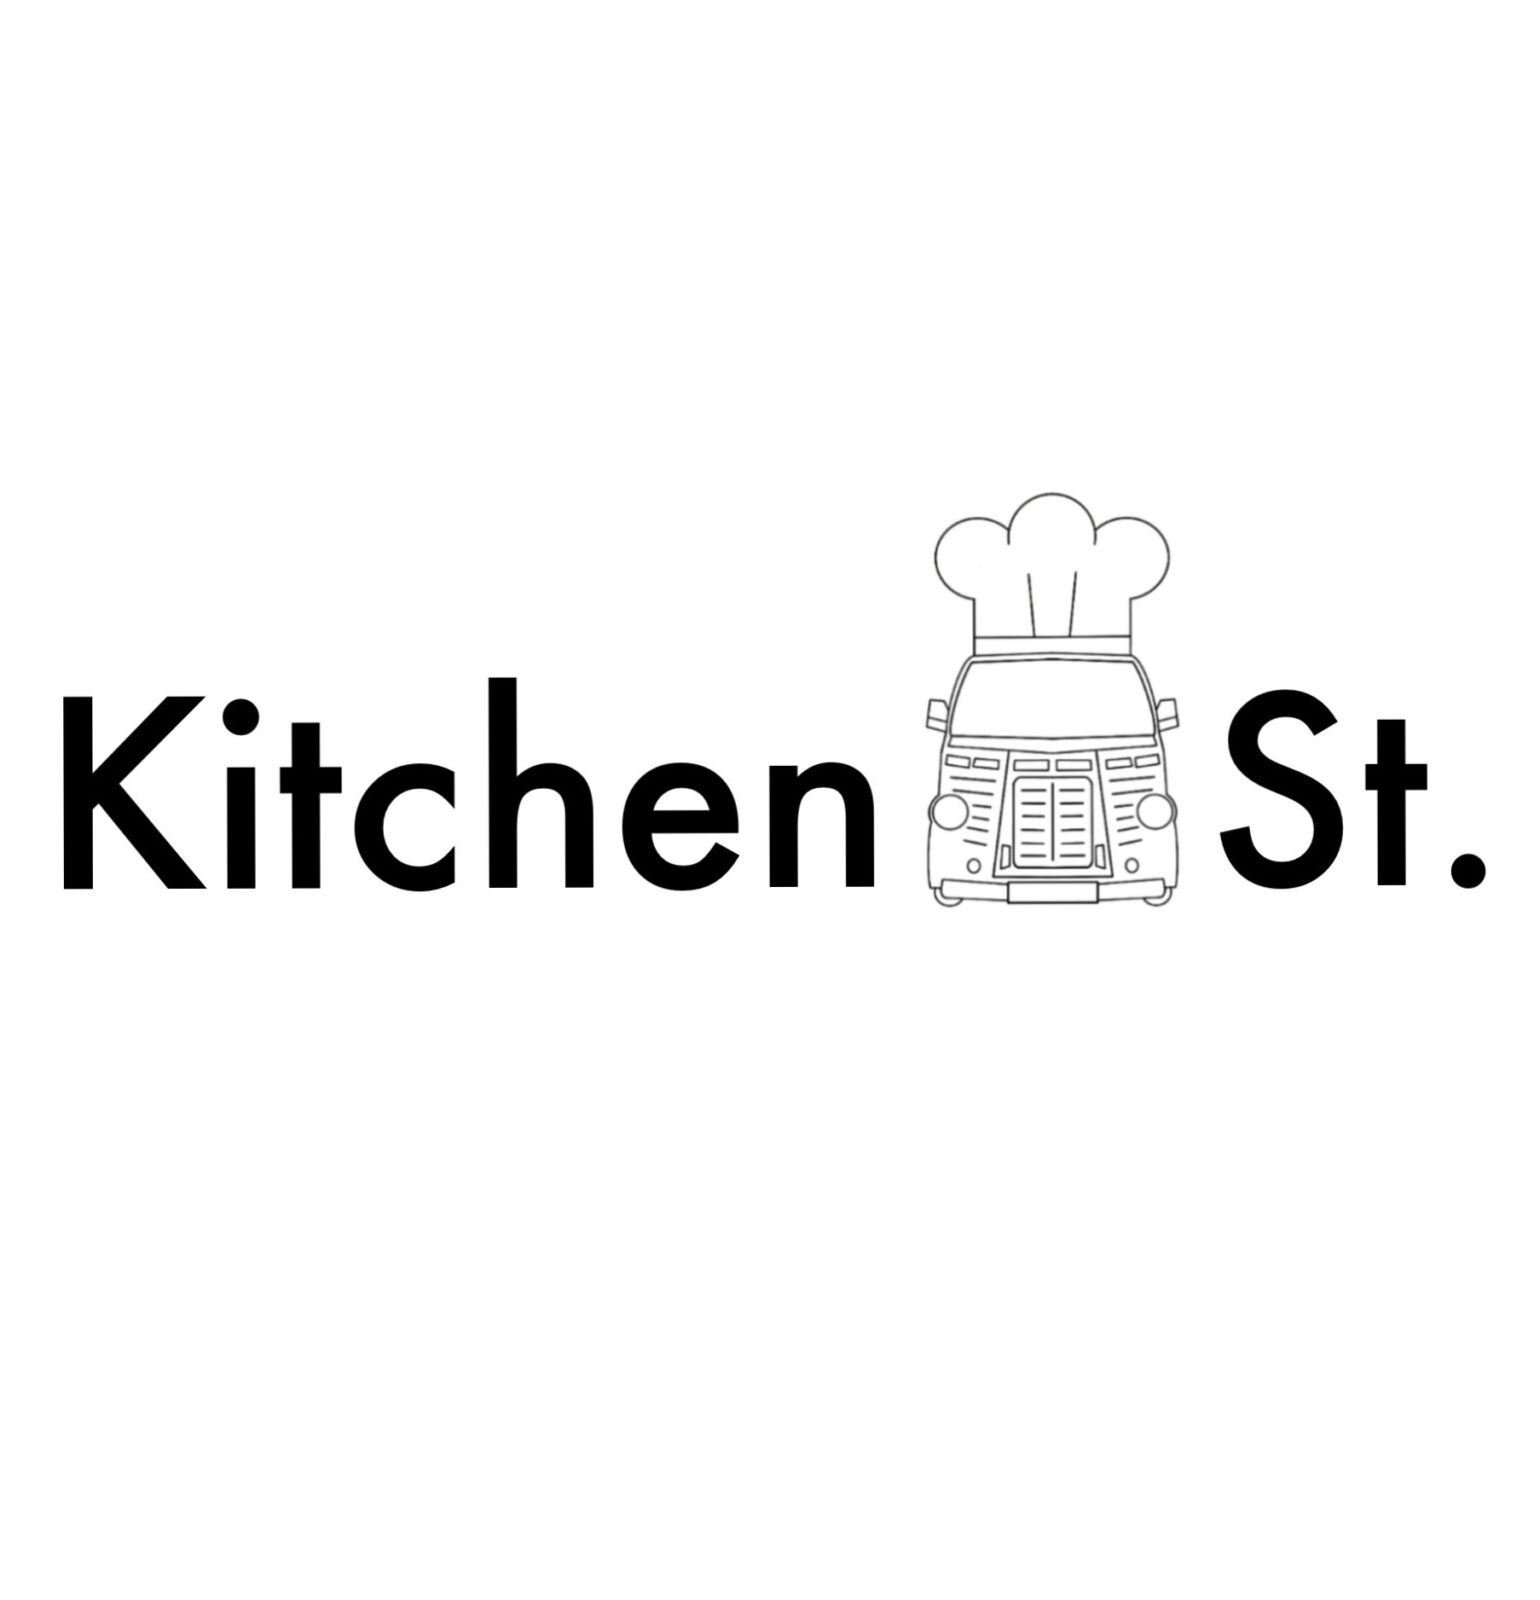 キッチンカーロゴ